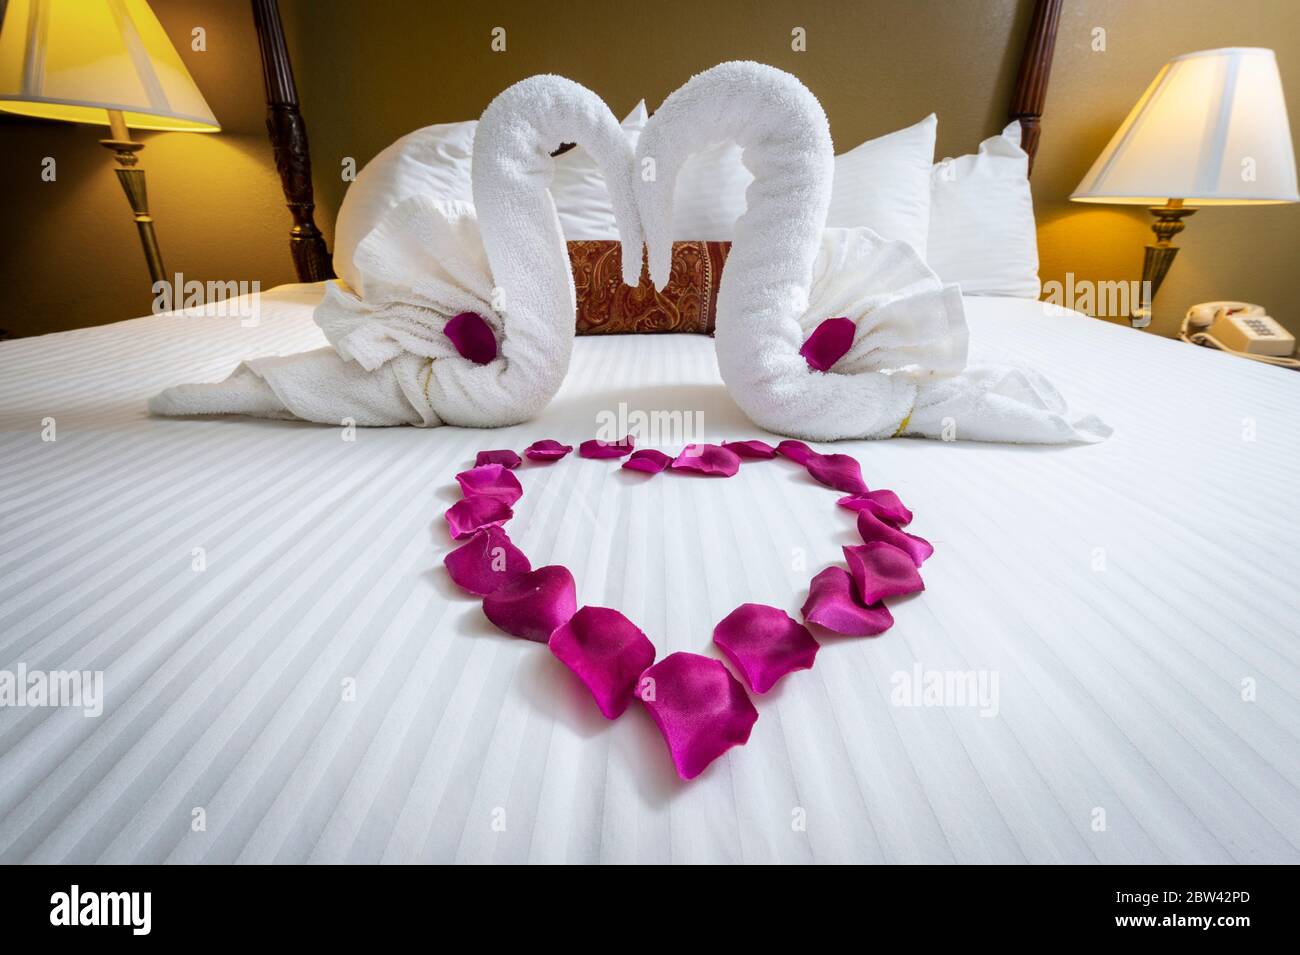 Schwan Handtuch Dekorationen und herzförmige Rosenblätter auf dem Bett in Honeymoon Suite Hotel Zimmer Bett Stockfoto